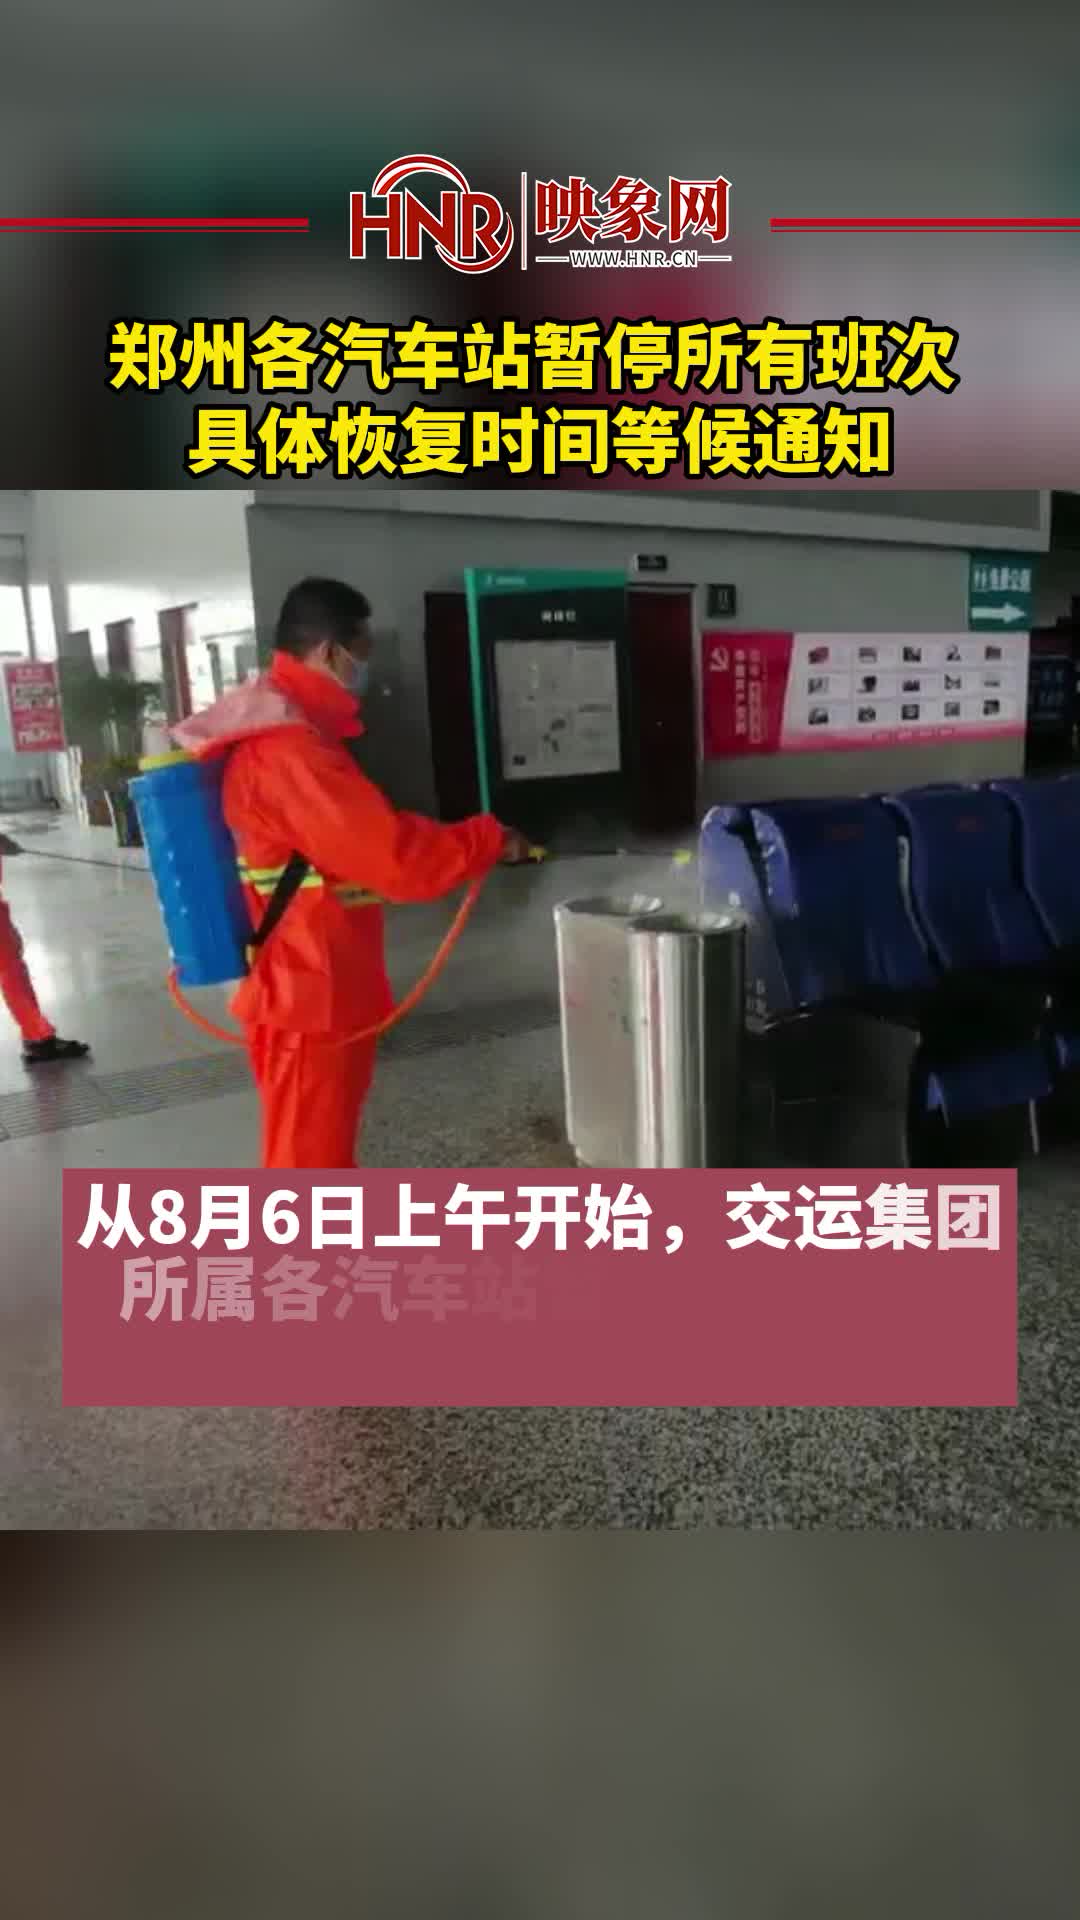 郑州各汽车站暂停所有班次 具体恢复时间等候通知